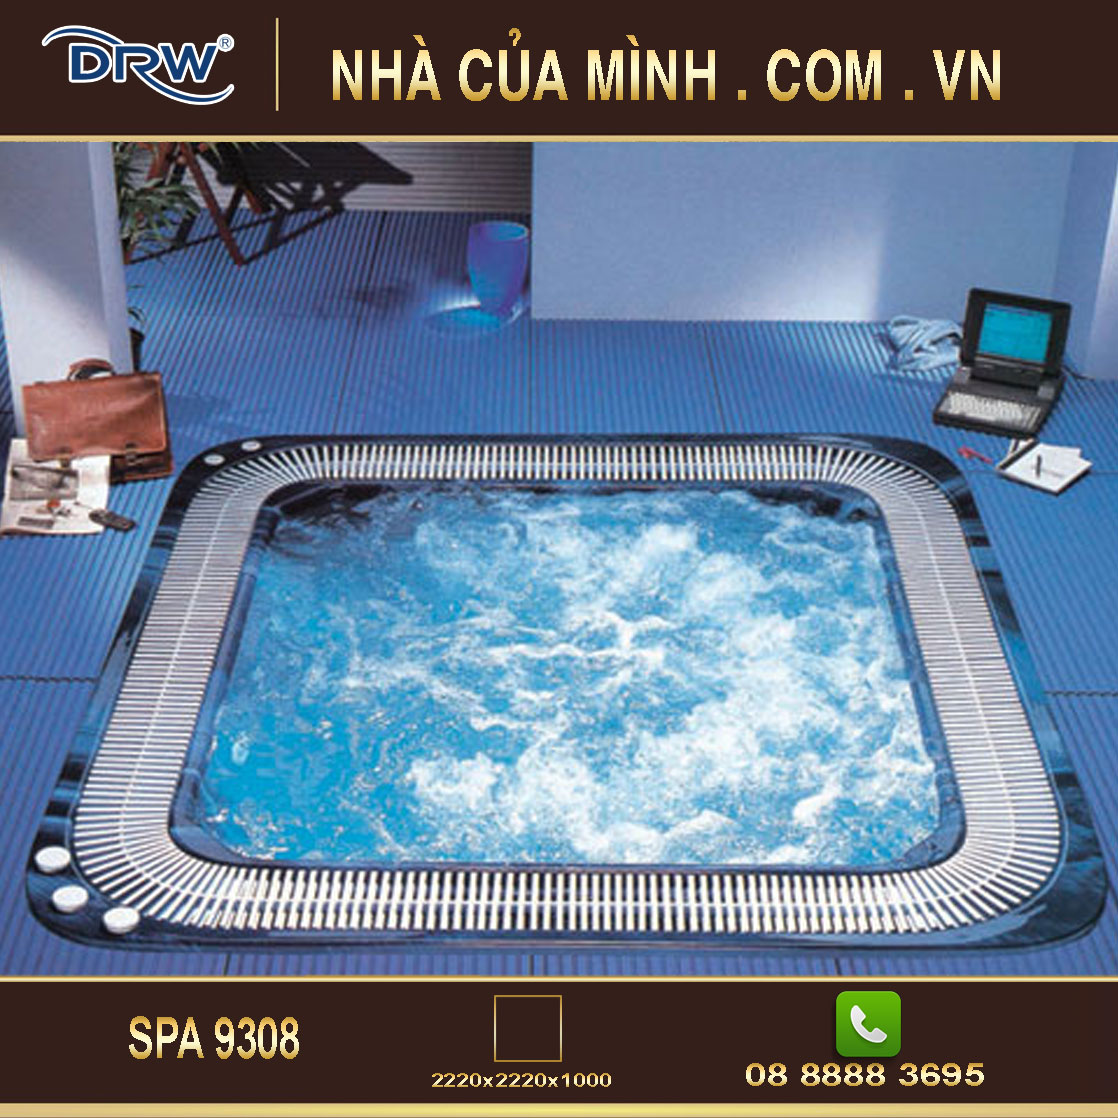 Bồn tắm cho Spa bể bơi SPA 9308 cao cấp